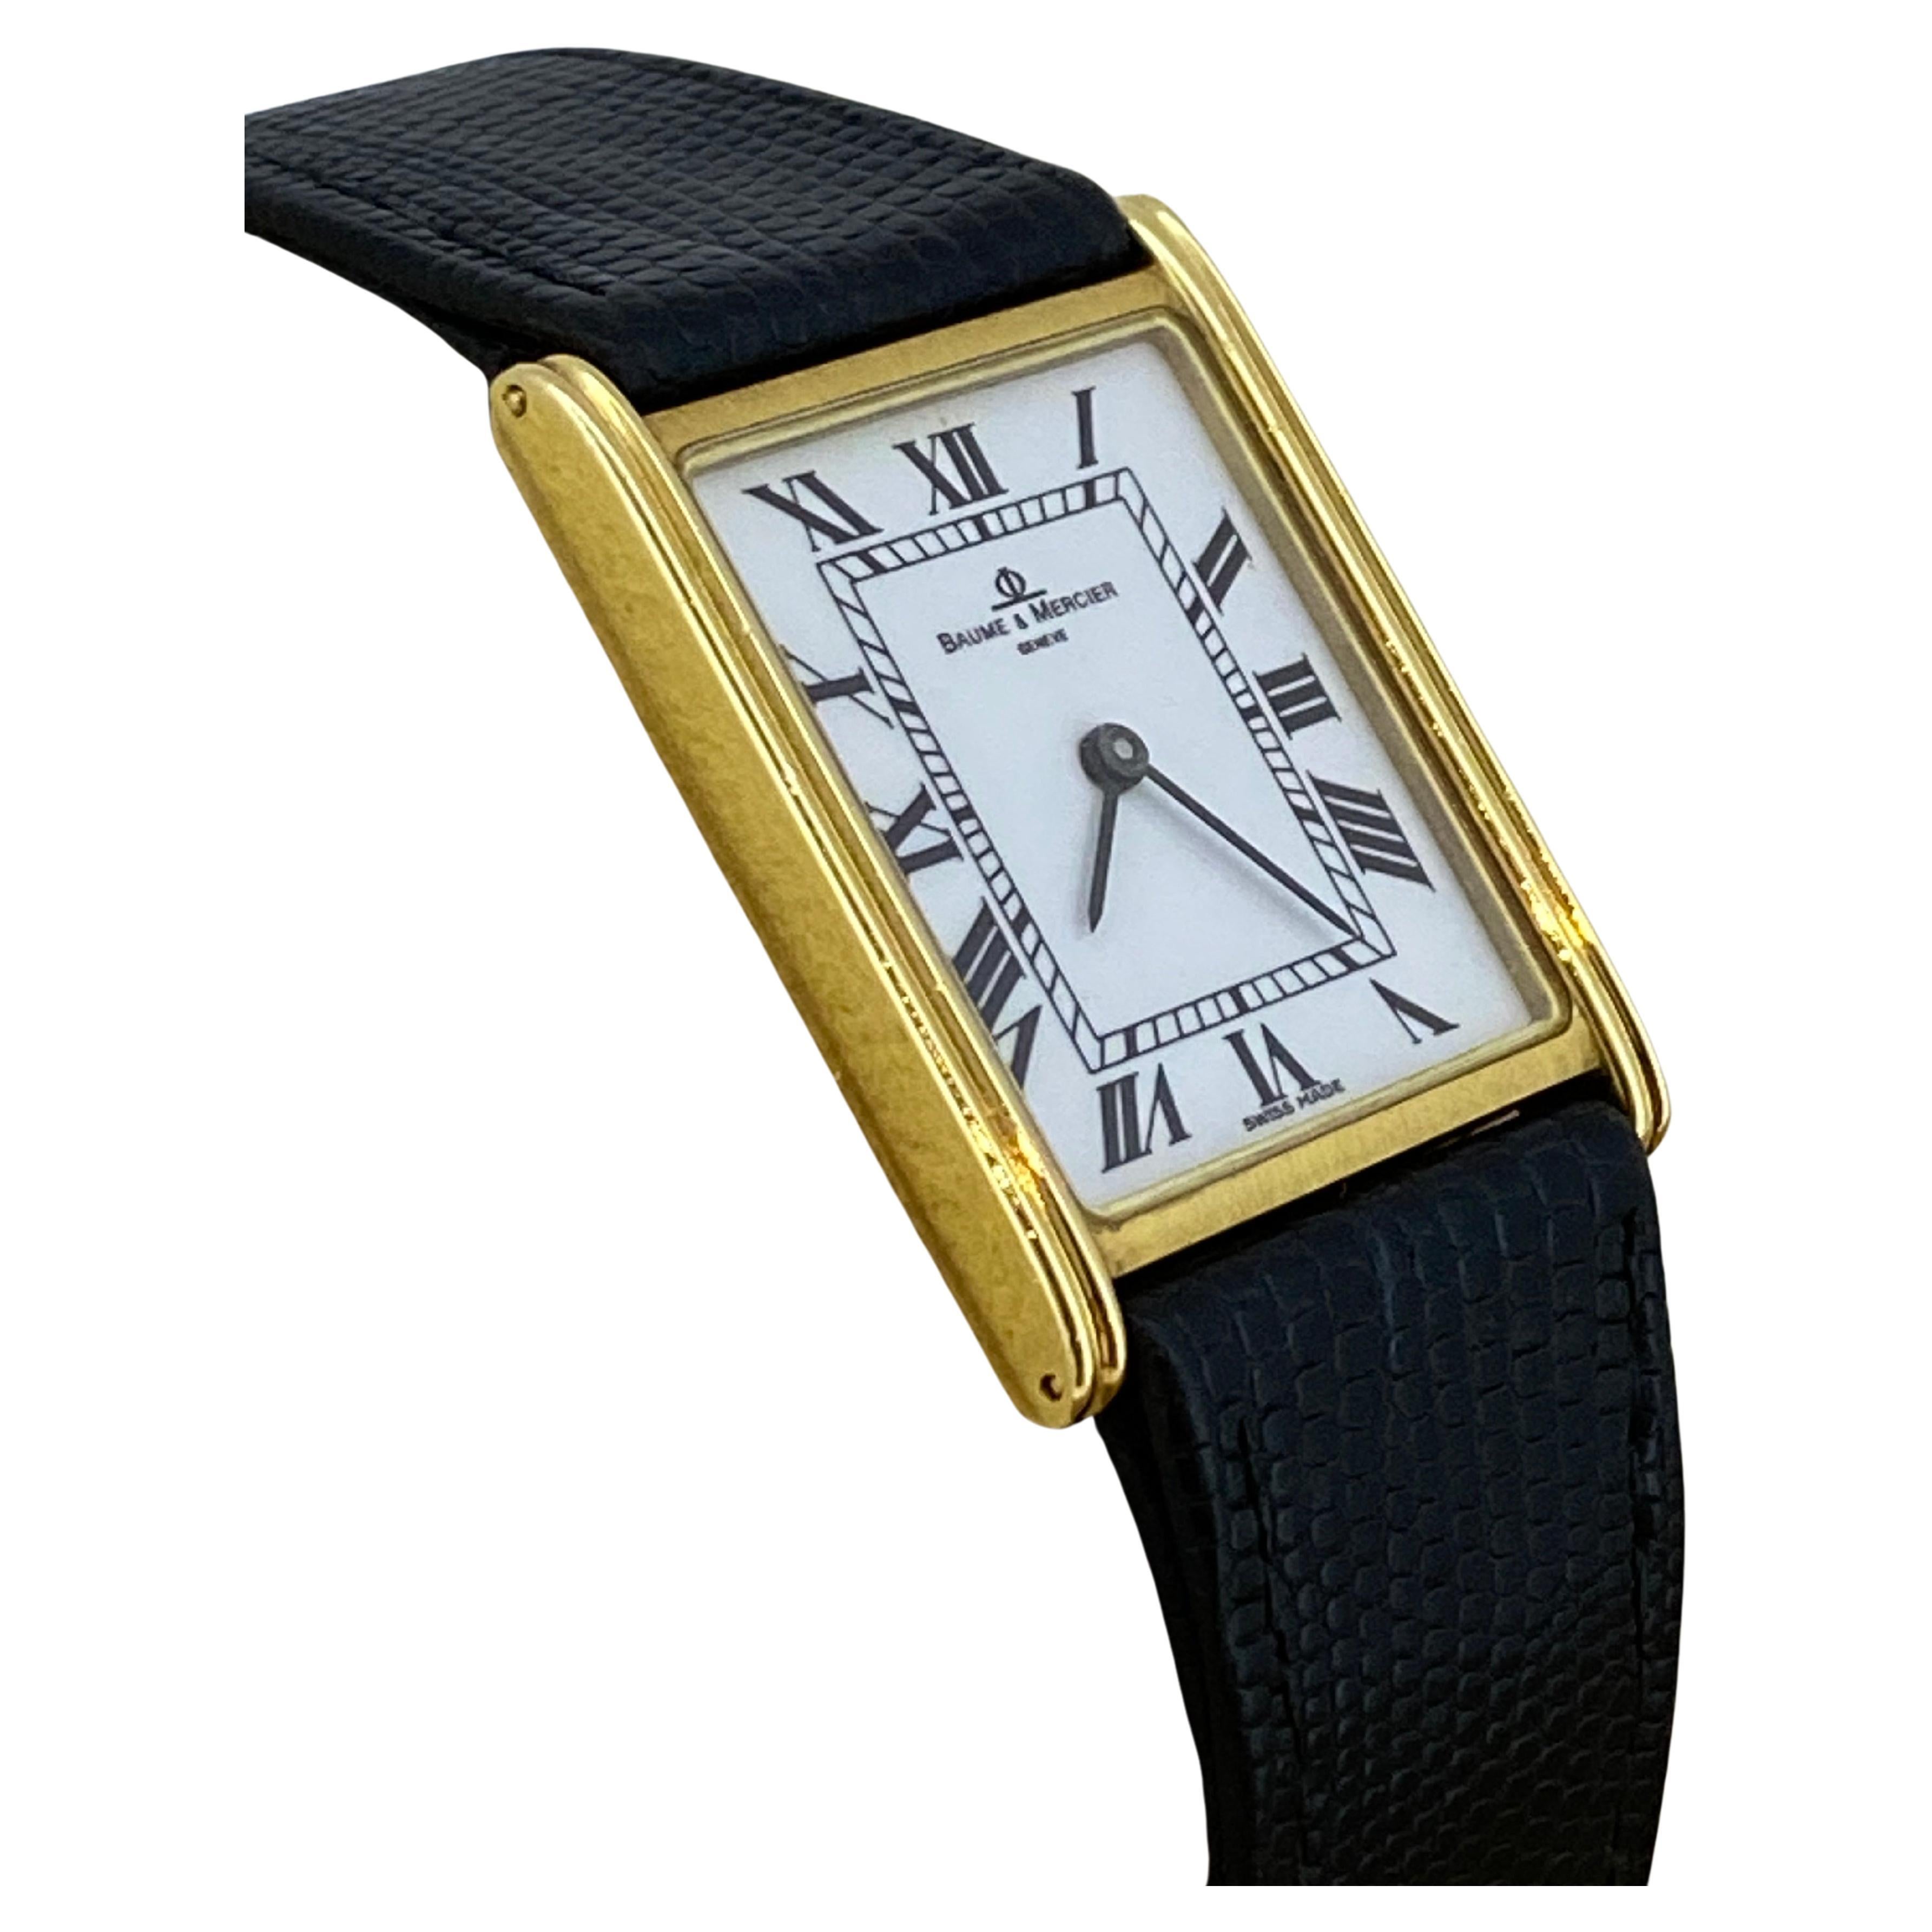 Es uno de los relojes más codiciados y deseados, 

este elegante Baume & Mercier Geneve de oro de 18 quilates, 

ref 1830  

está en perfecto estado y funciona perfectamente 

 

Se remonta a la década de 1980, 

de diseño atemporal 

este reloj es